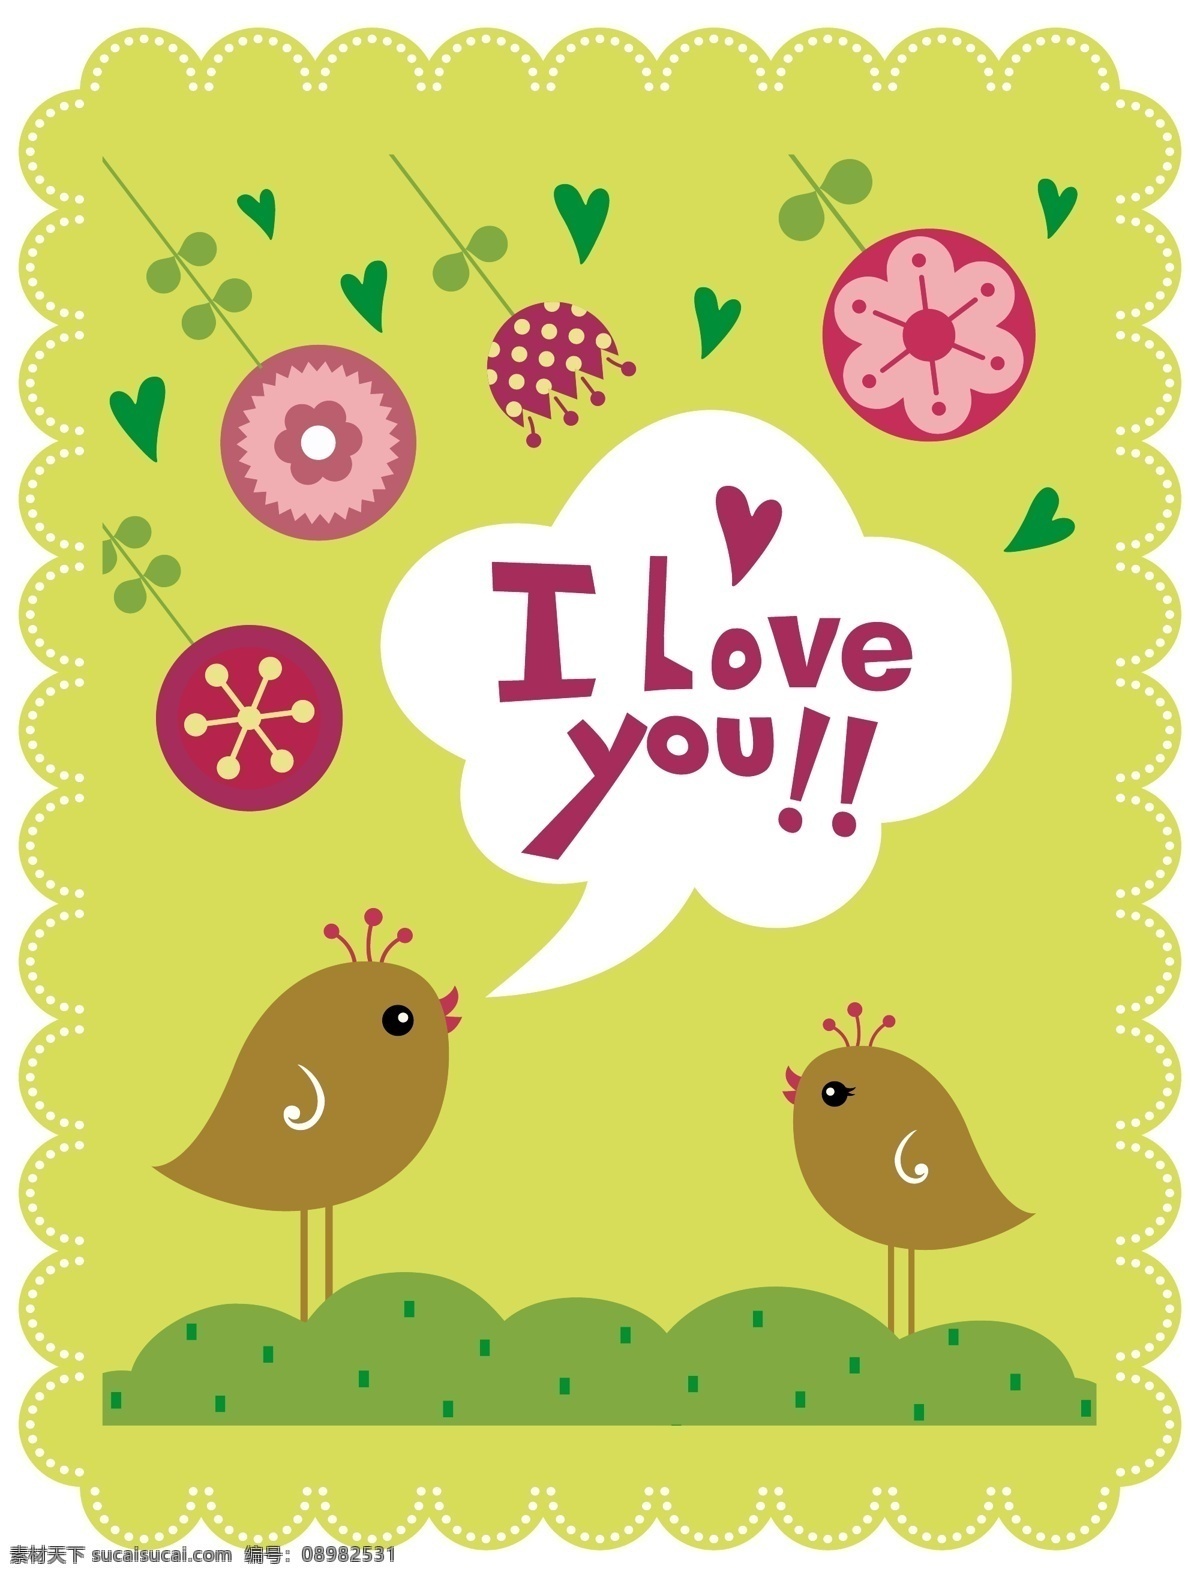 卡通 爱情 图案 iloveyou 爱情鸟 爱情图案 卡通爱情 卡通图案 一对小鸟 自然风格 矢量图